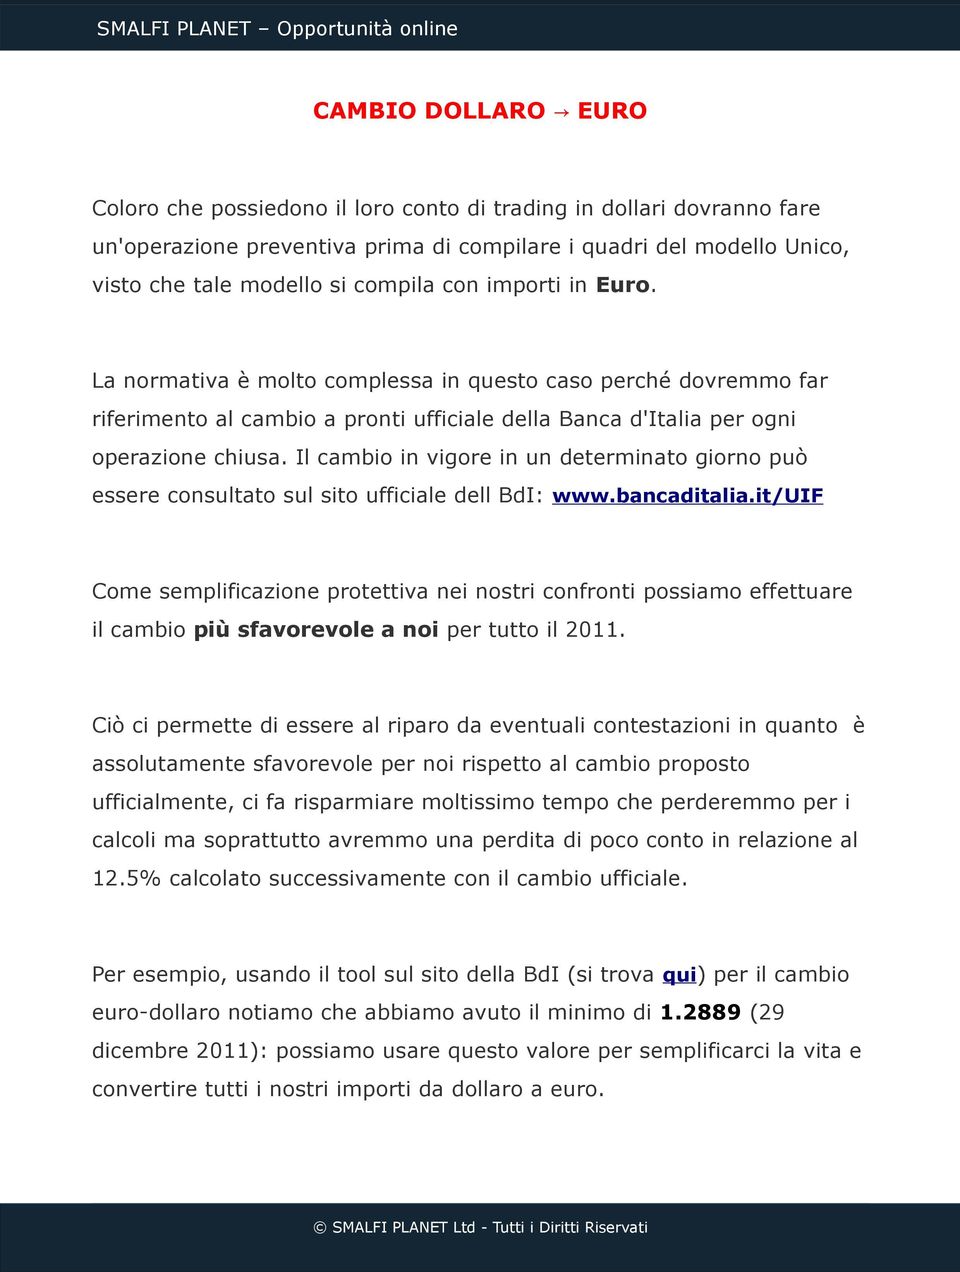 Il cambio in vigore in un determinato giorno può essere consultato sul sito ufficiale dell BdI: www.bancaditalia.